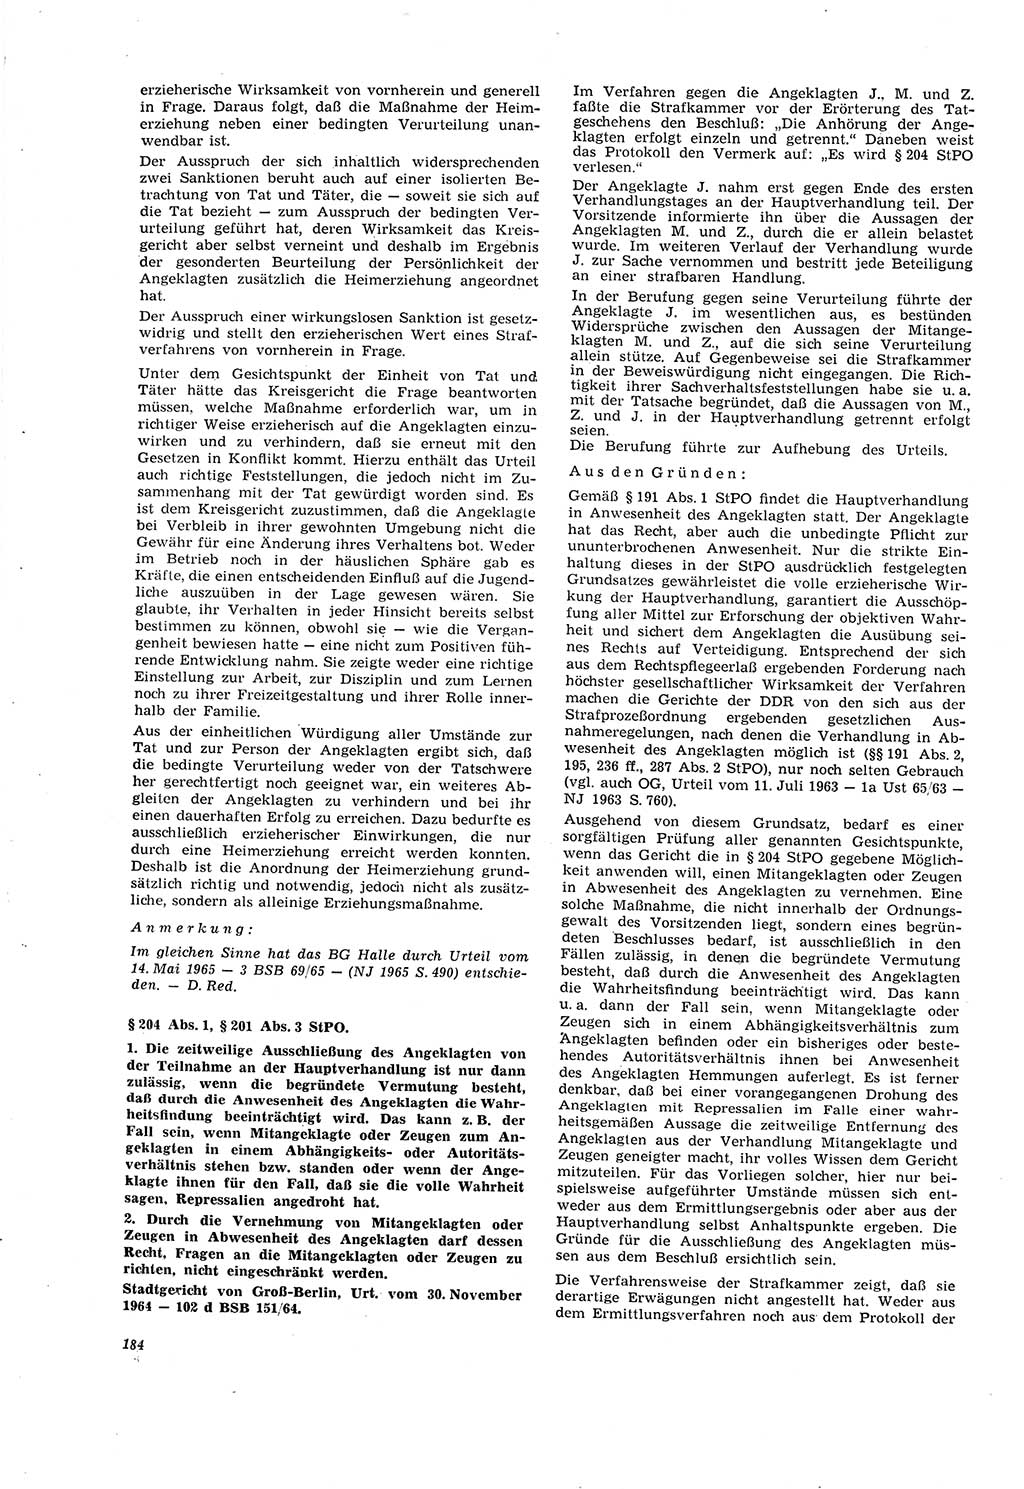 Neue Justiz (NJ), Zeitschrift für Recht und Rechtswissenschaft [Deutsche Demokratische Republik (DDR)], 20. Jahrgang 1966, Seite 184 (NJ DDR 1966, S. 184)